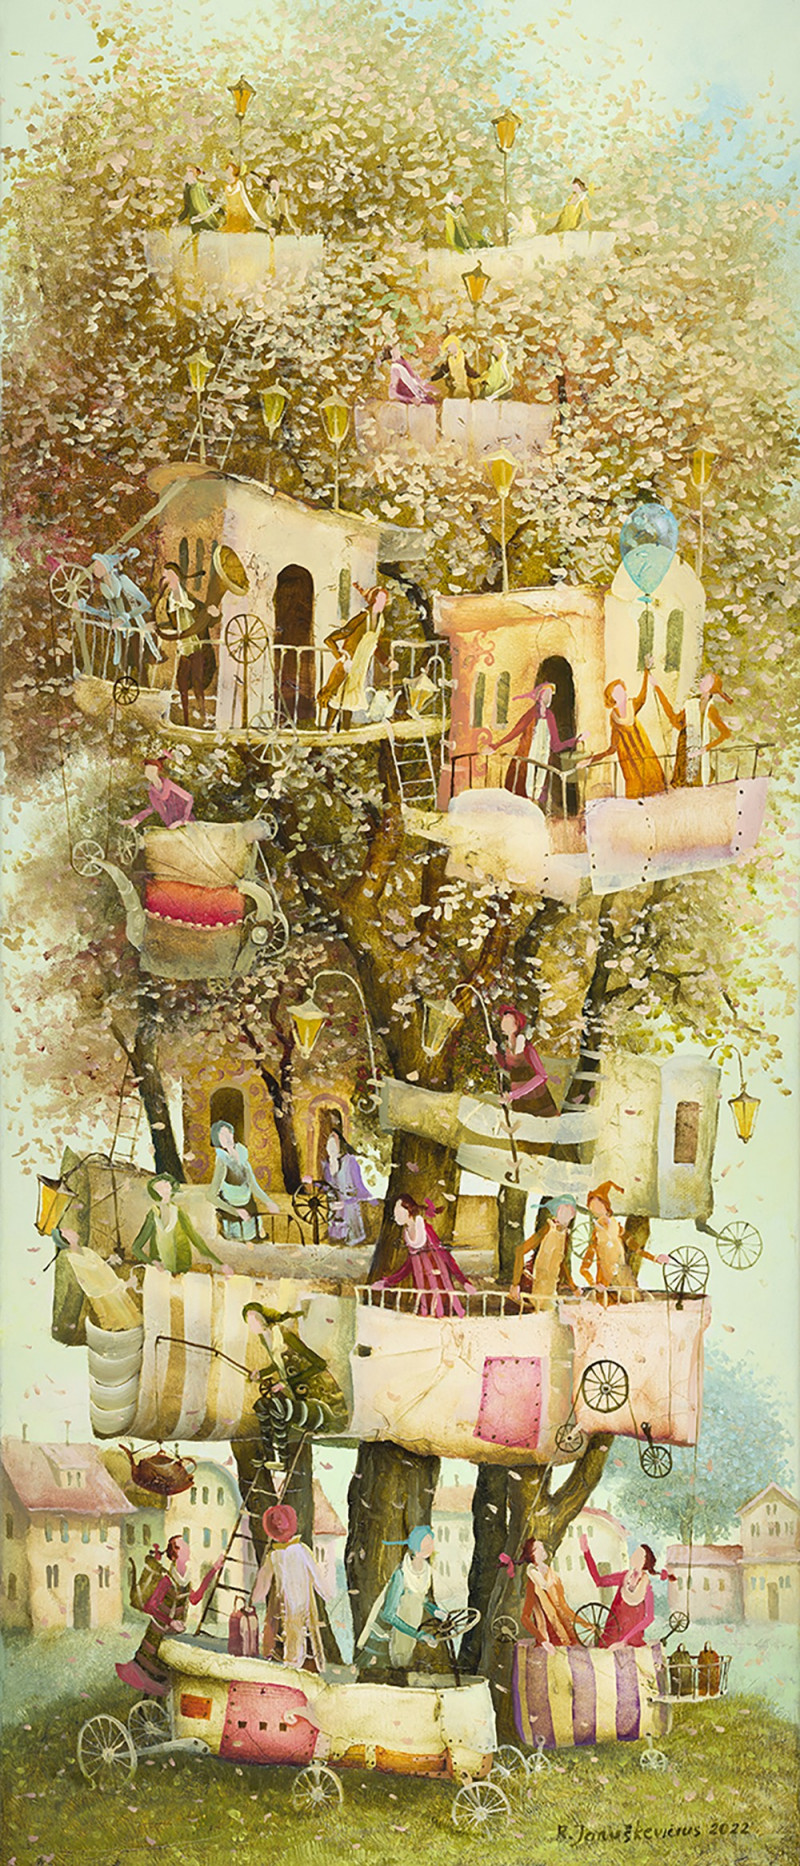 Holiday Tree original painting by Remigijus Januškevičius. Freed Fantasy